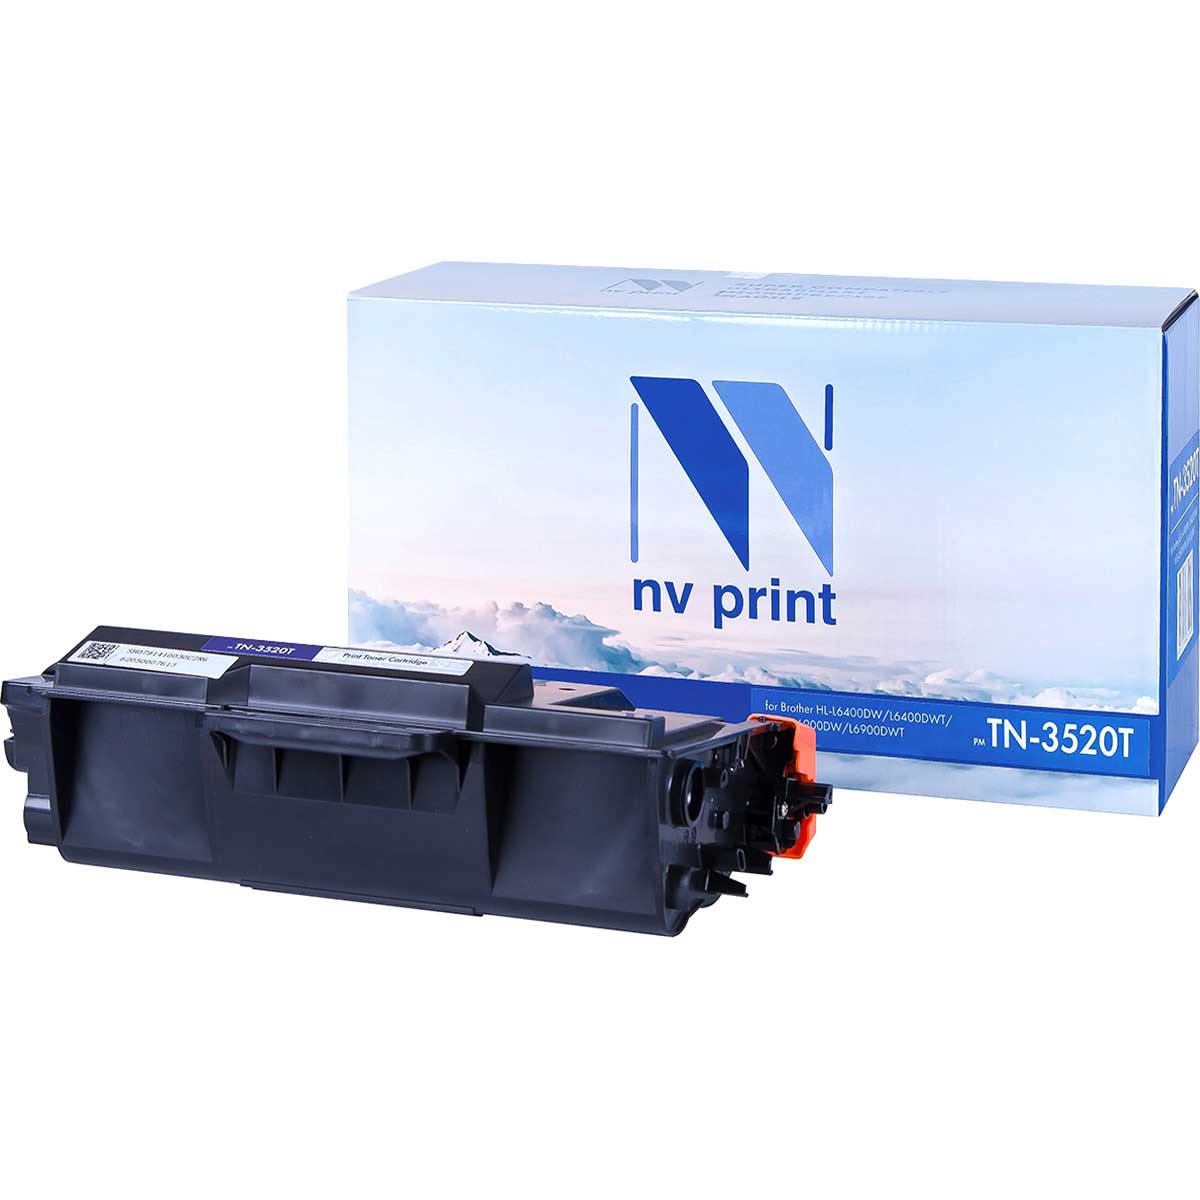 Картридж для лазерного принтера NV Print TN3520T, черный, купить в Москве, цены в интернет-магазинах на sbermegamarket.ru